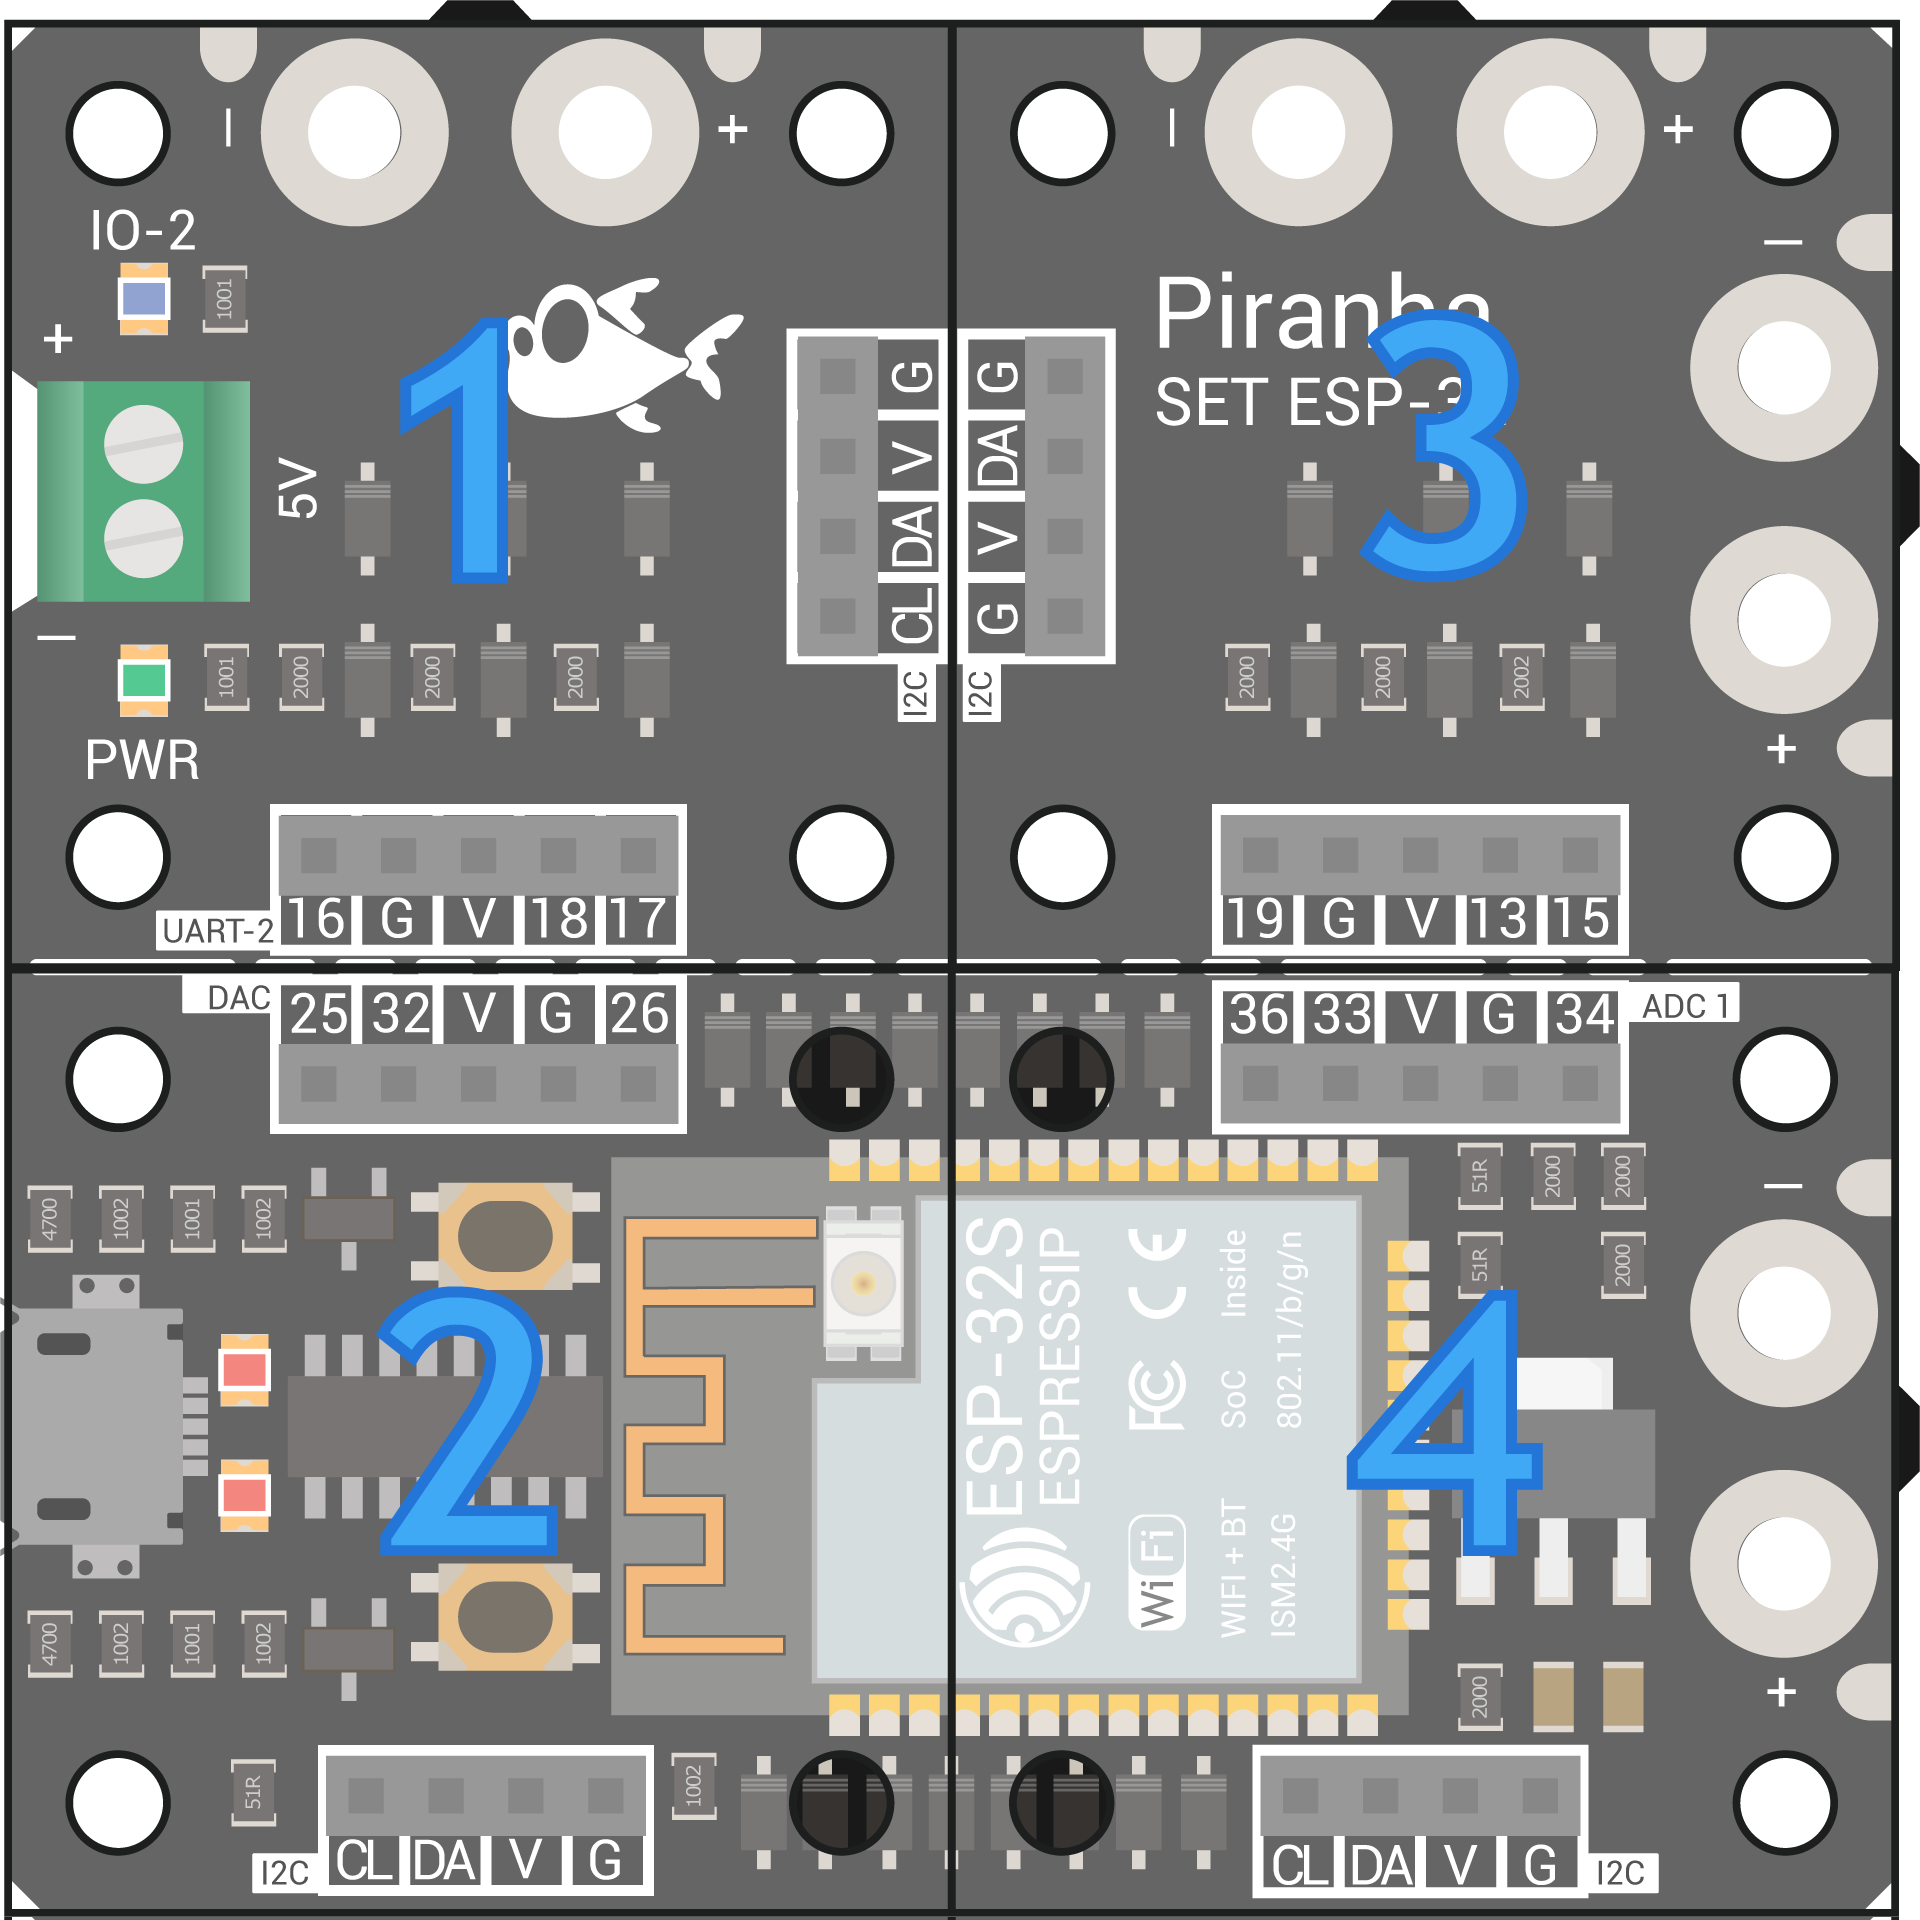 Piranha Set ESP32 Info 2